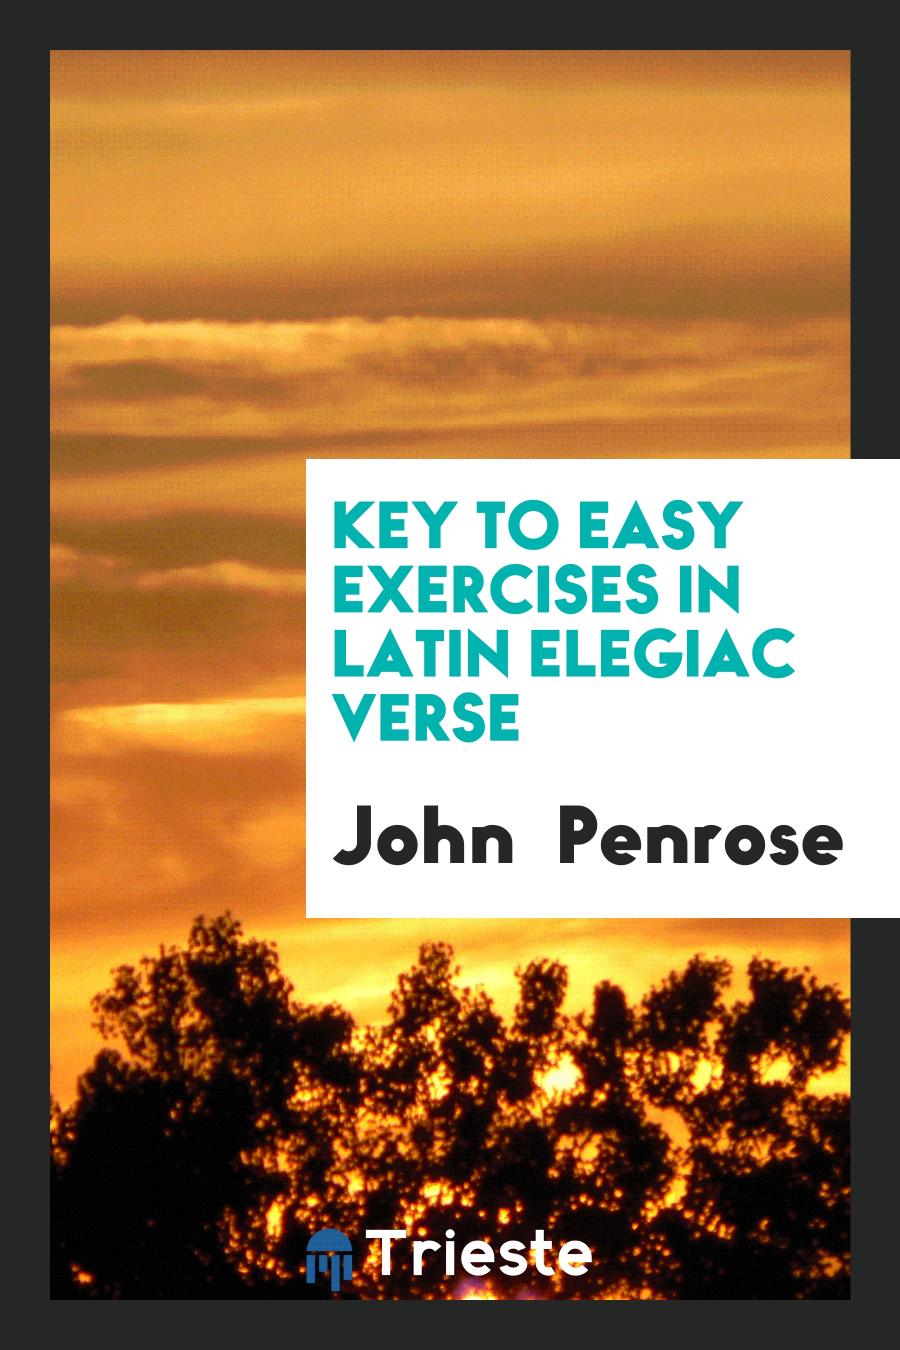 Key to easy exercises in latin elegiac verse